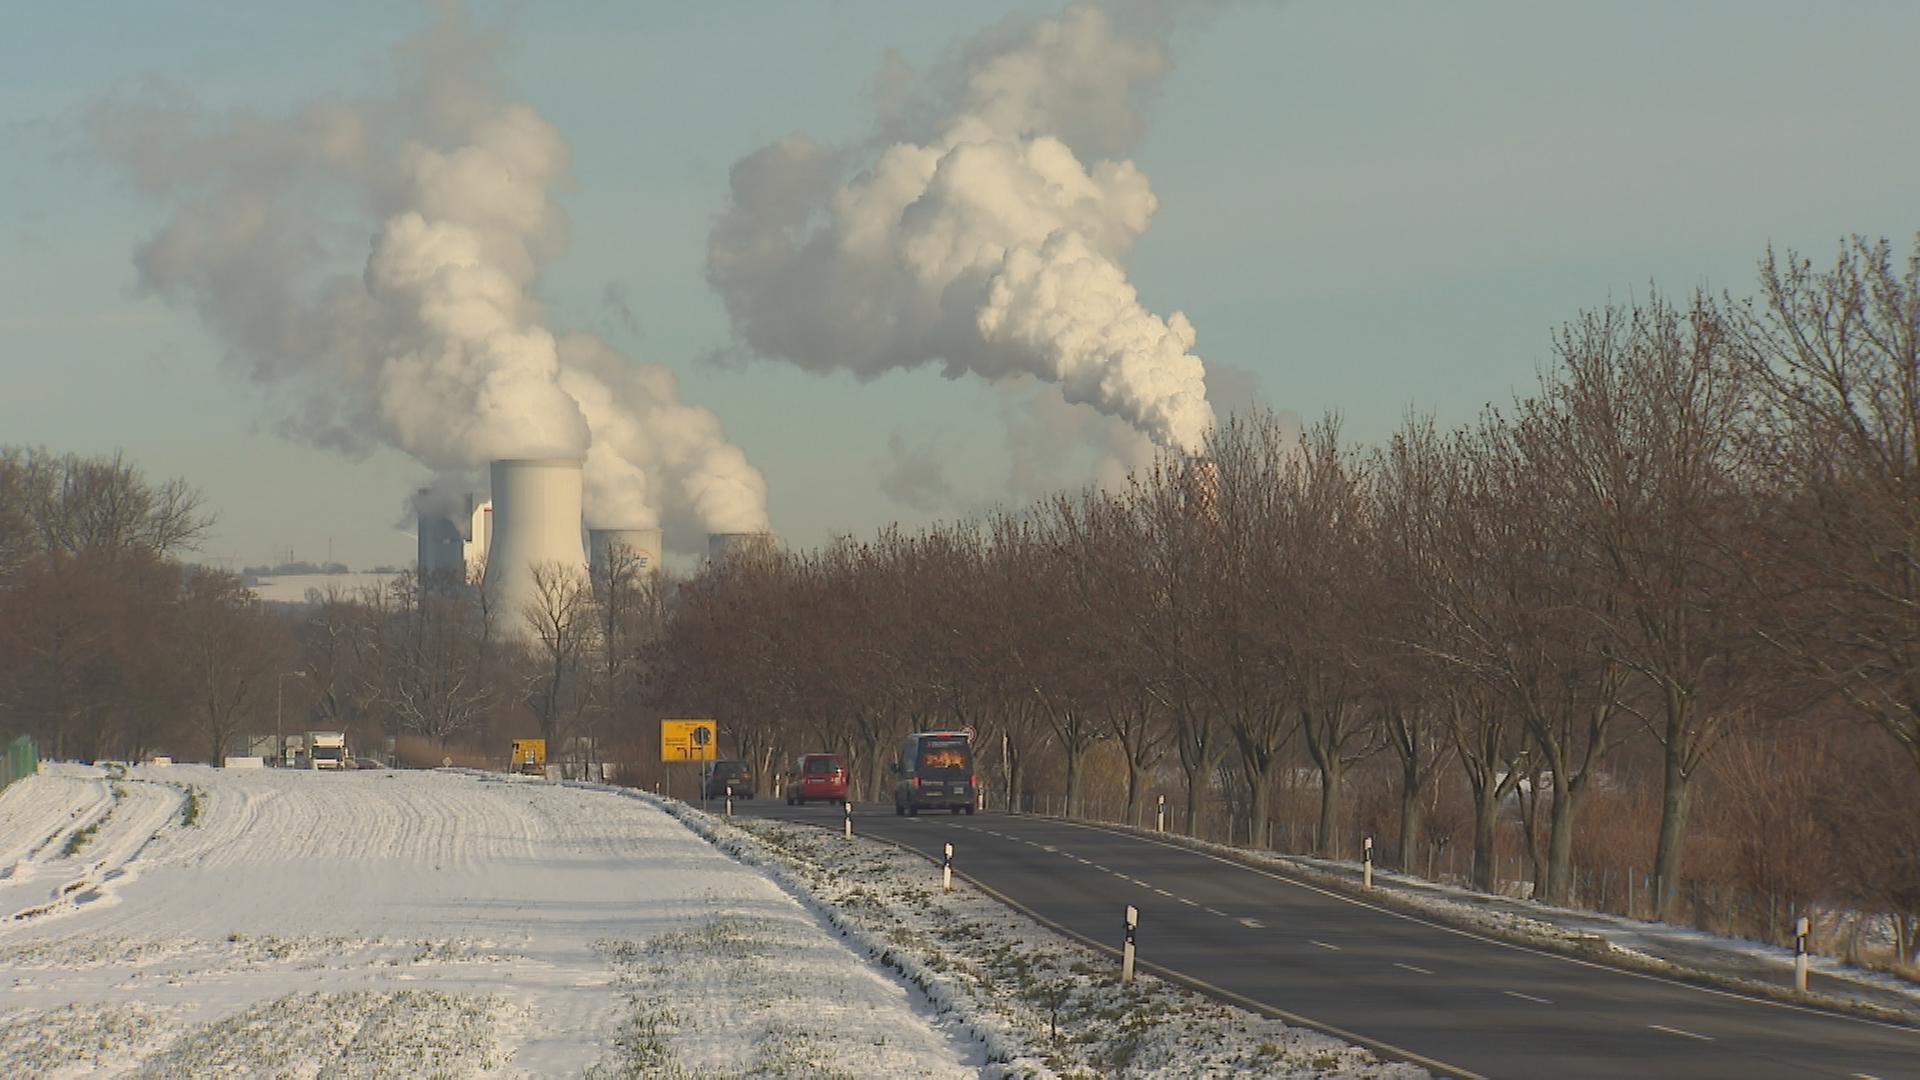 Auf dem Bild sind polnische Kohlekraftwerke zu sehen.